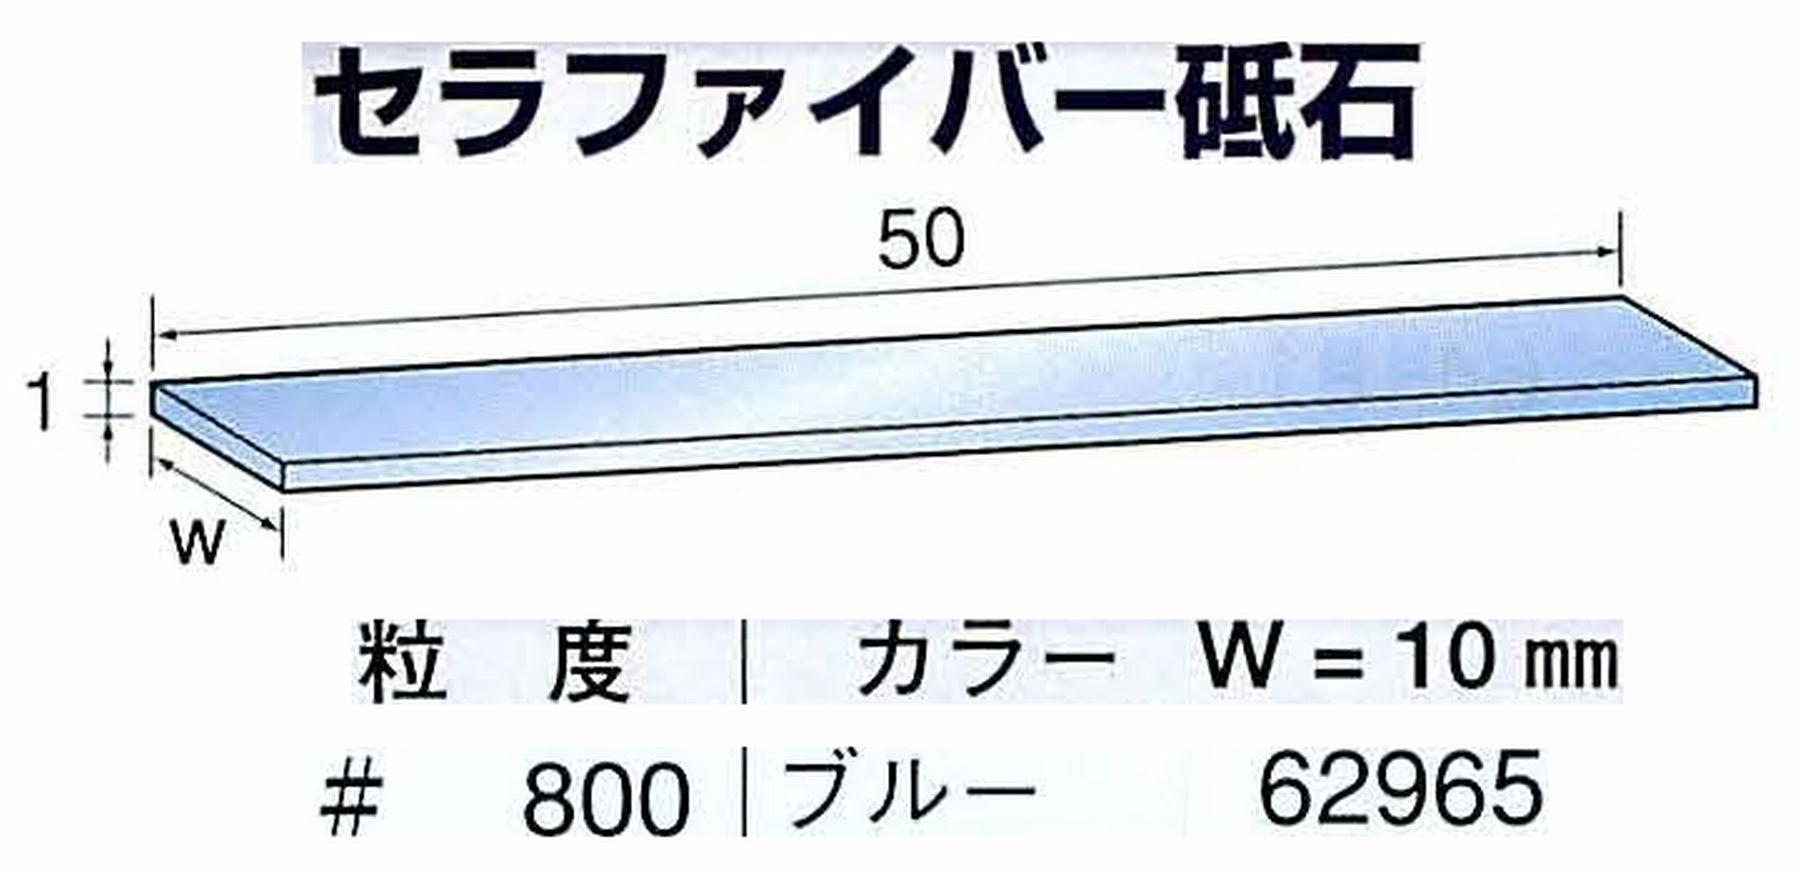 ナカニシ/NAKANISHI ペンシルタイプ 電動・エアーヤスリ(左右動) スイングラスター専用工具 セラファイバー砥石 62965